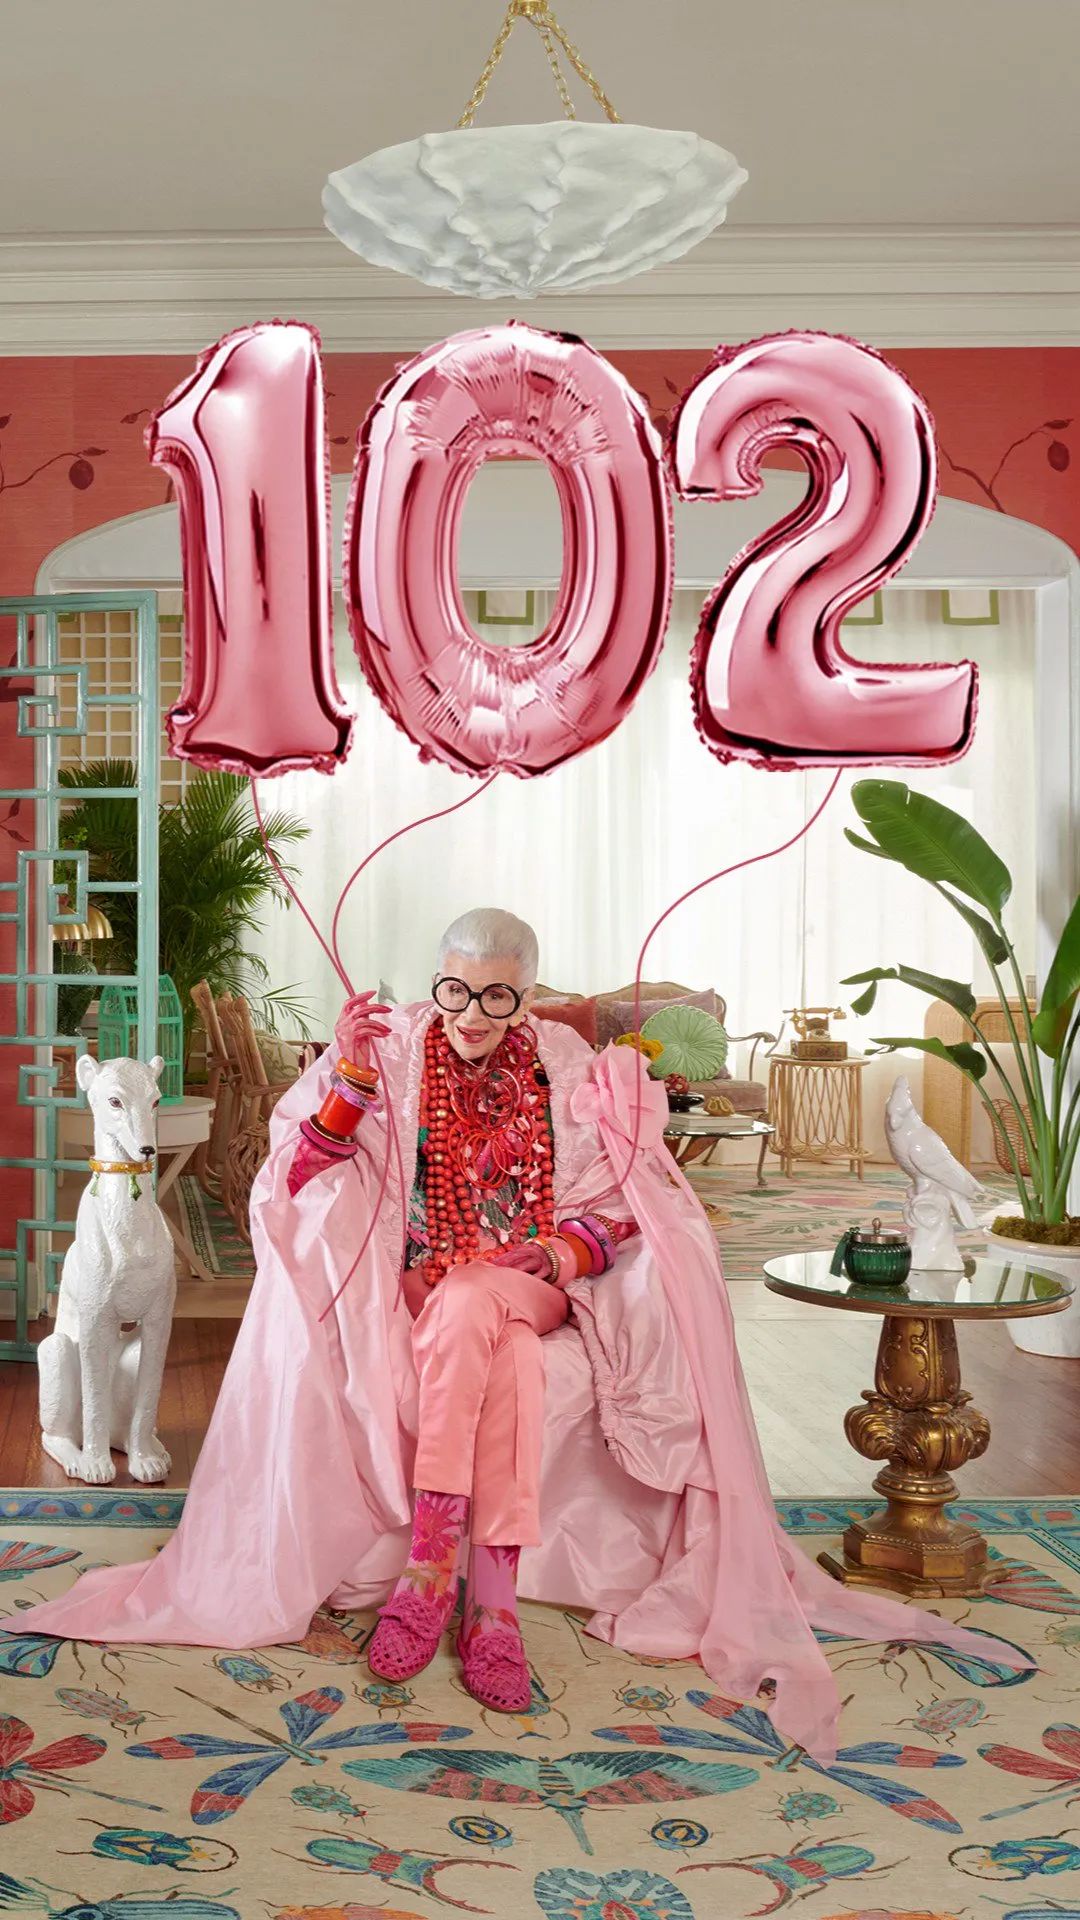 84岁走红,97岁做模特,艾瑞斯·阿普菲尔的彩色美学